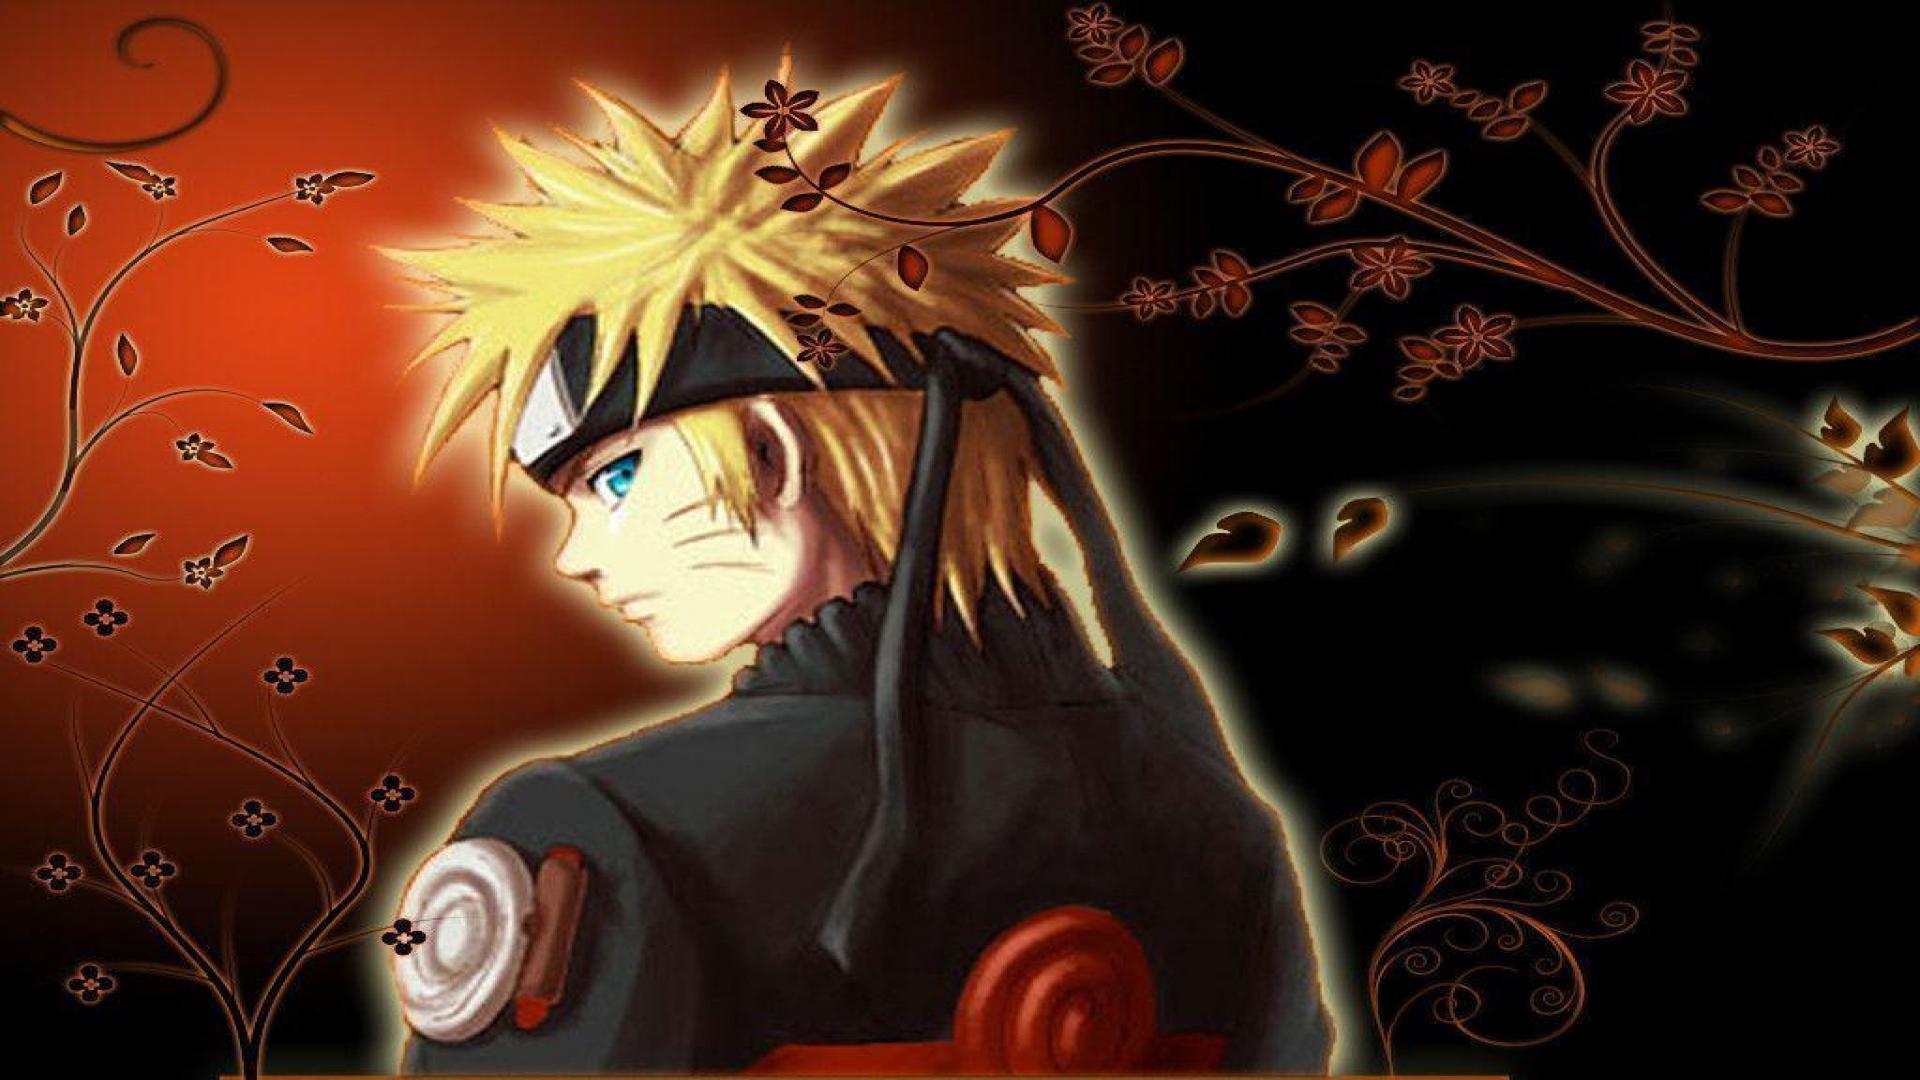 Tuyển tập hình ảnh Naruto 3D cực đẹp sắc nét nhất - [Kích thước hình ảnh: 1920x1080 px]